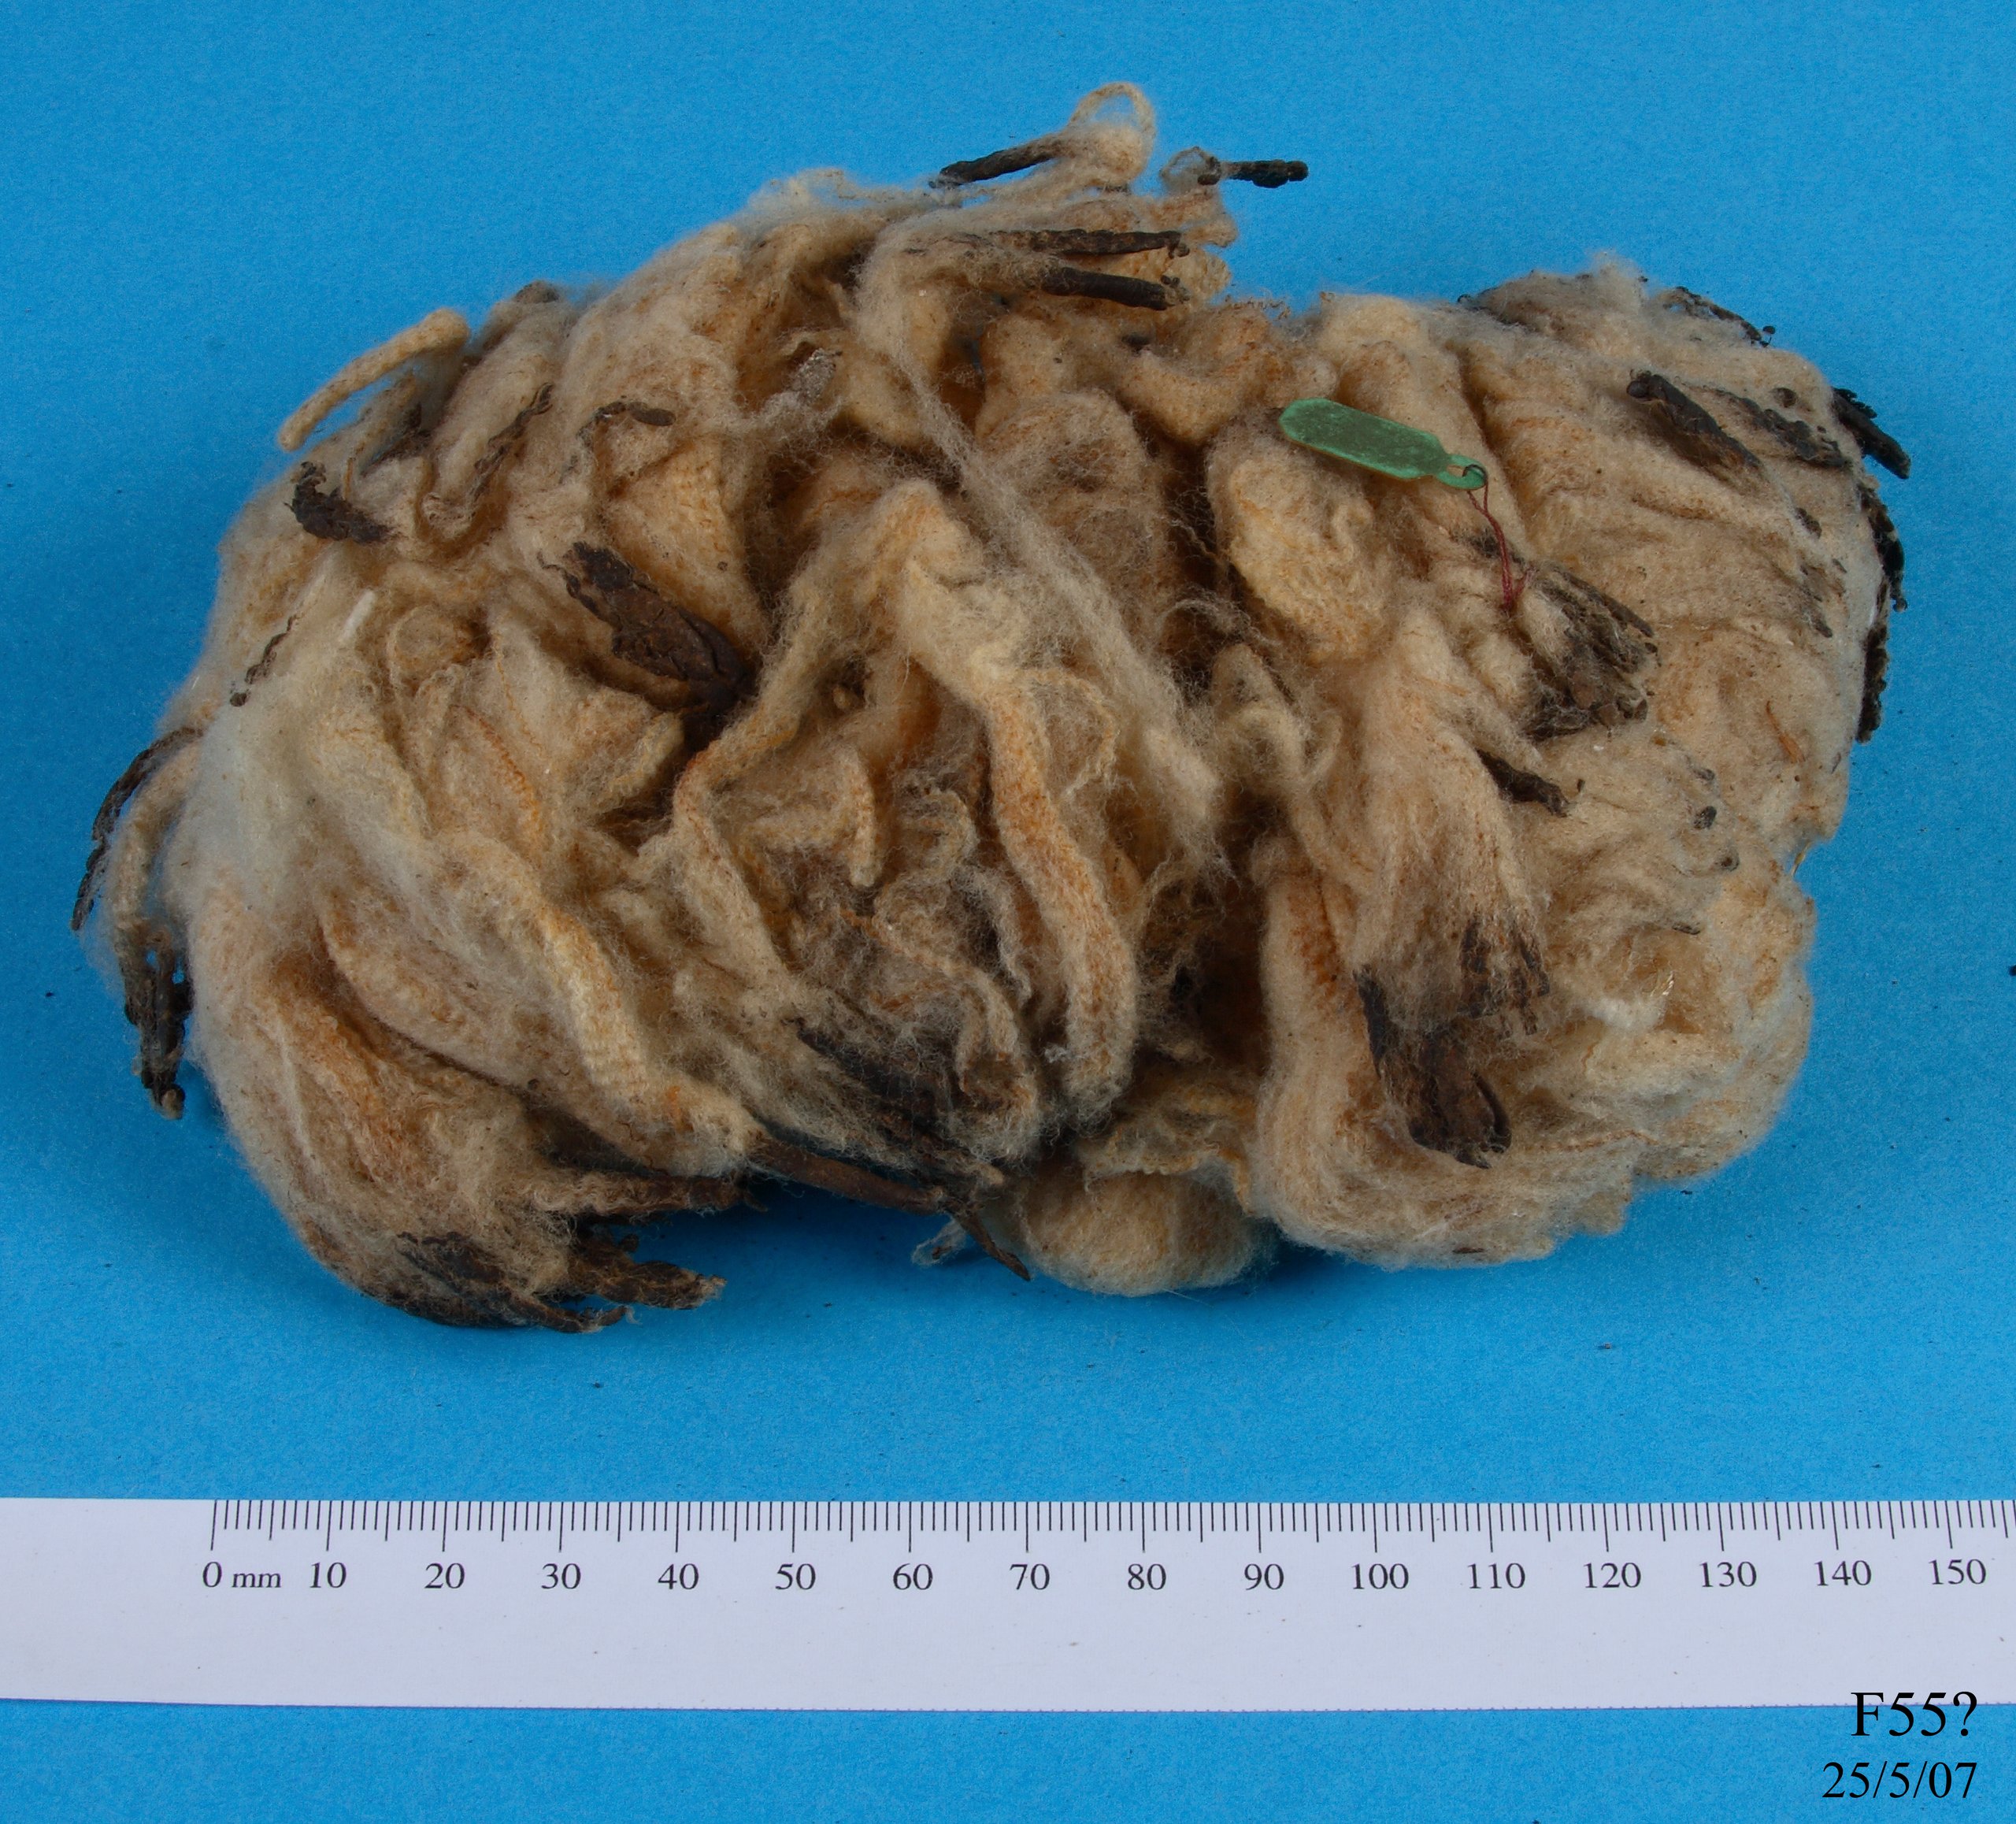 Wool specimen from hogget.